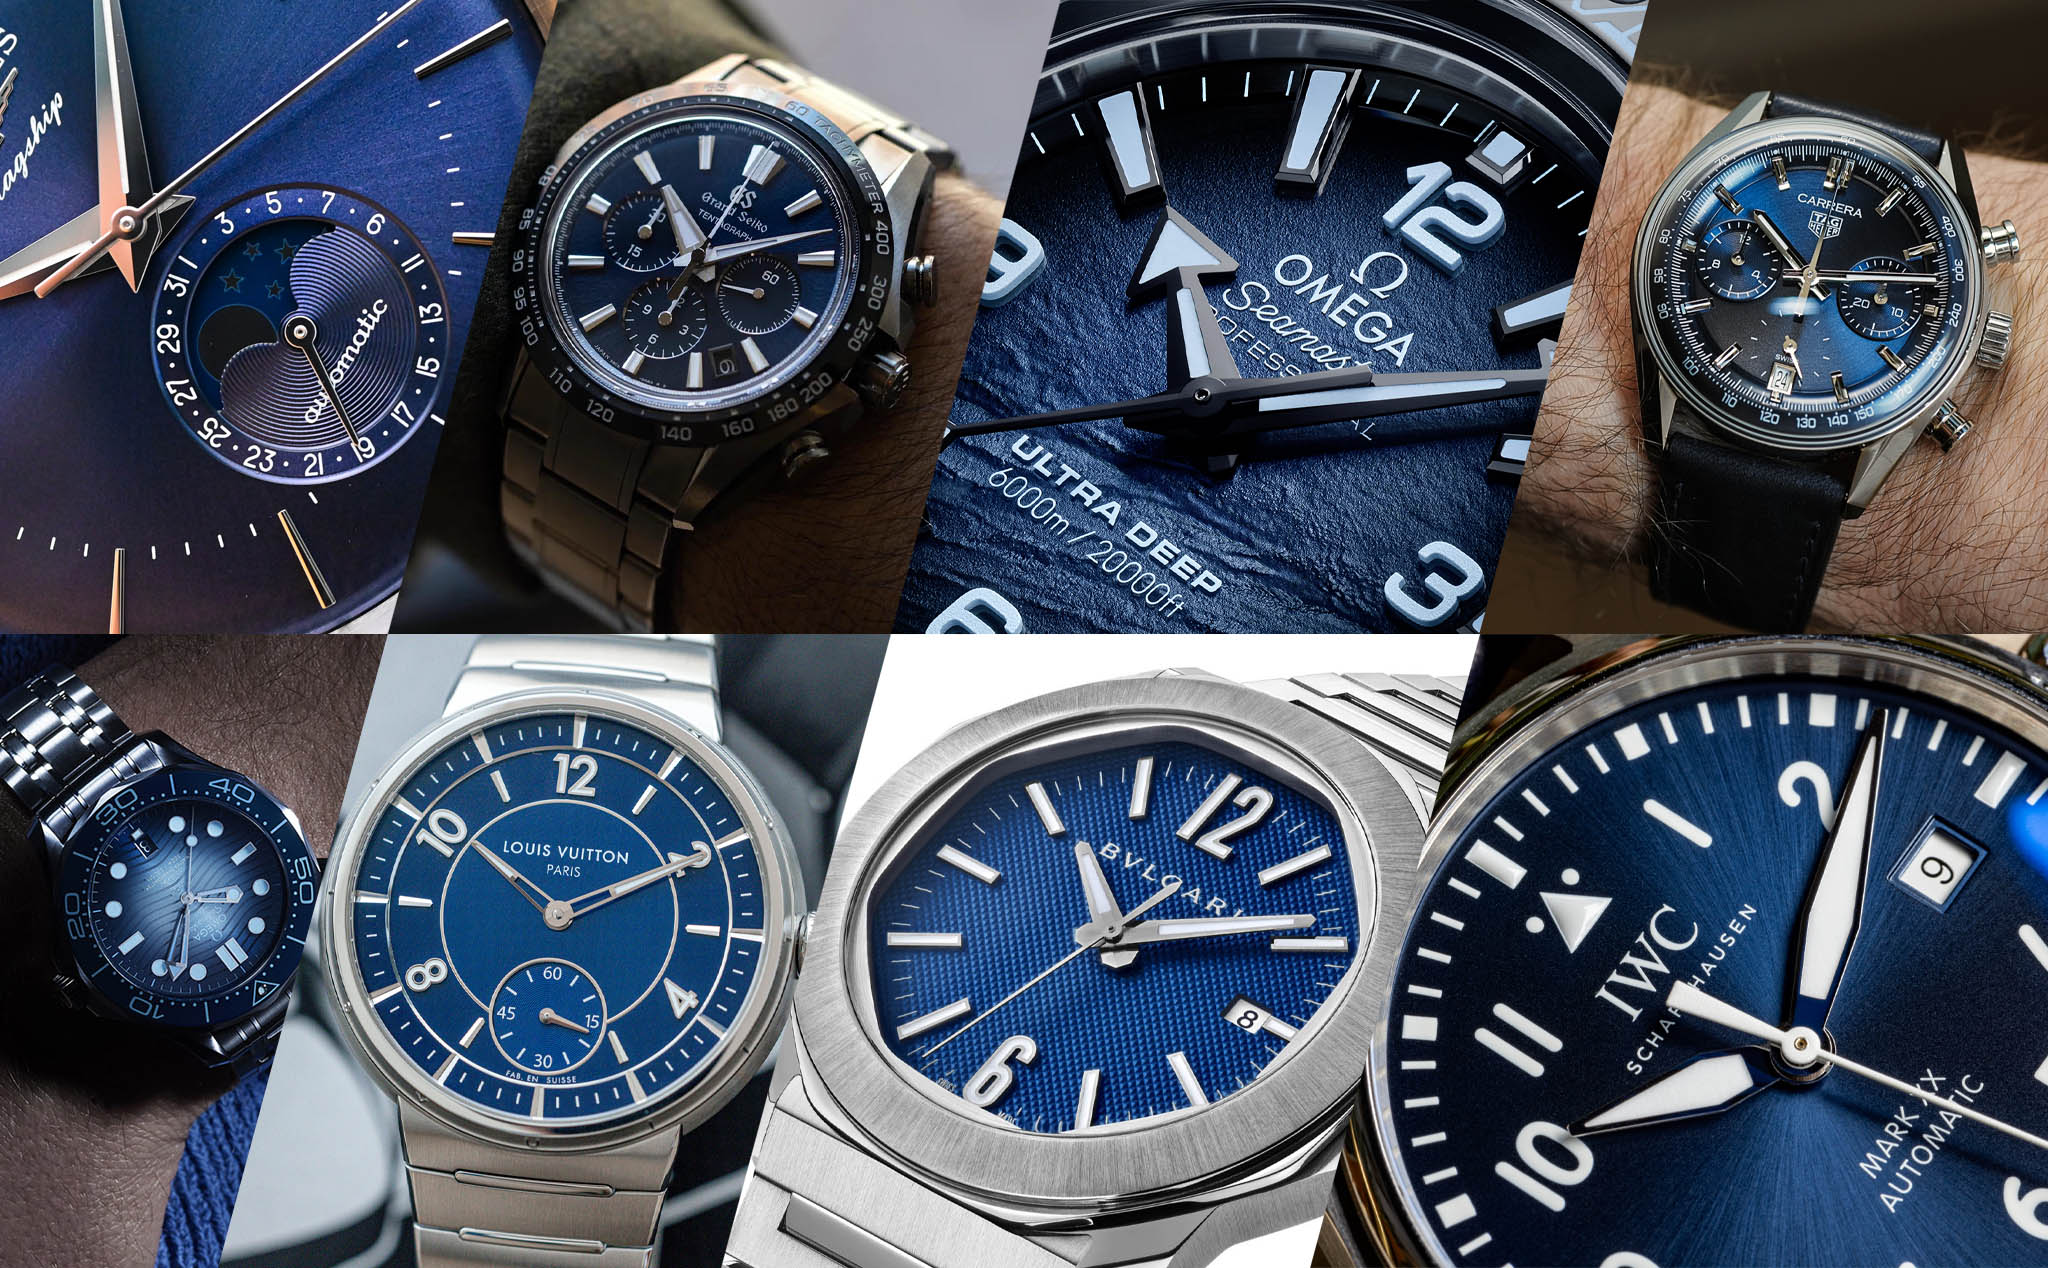 Năm ngoái xu hướng đồng hồ là xanh 'Tiffany', còn trend năm nay là xanh nước biển